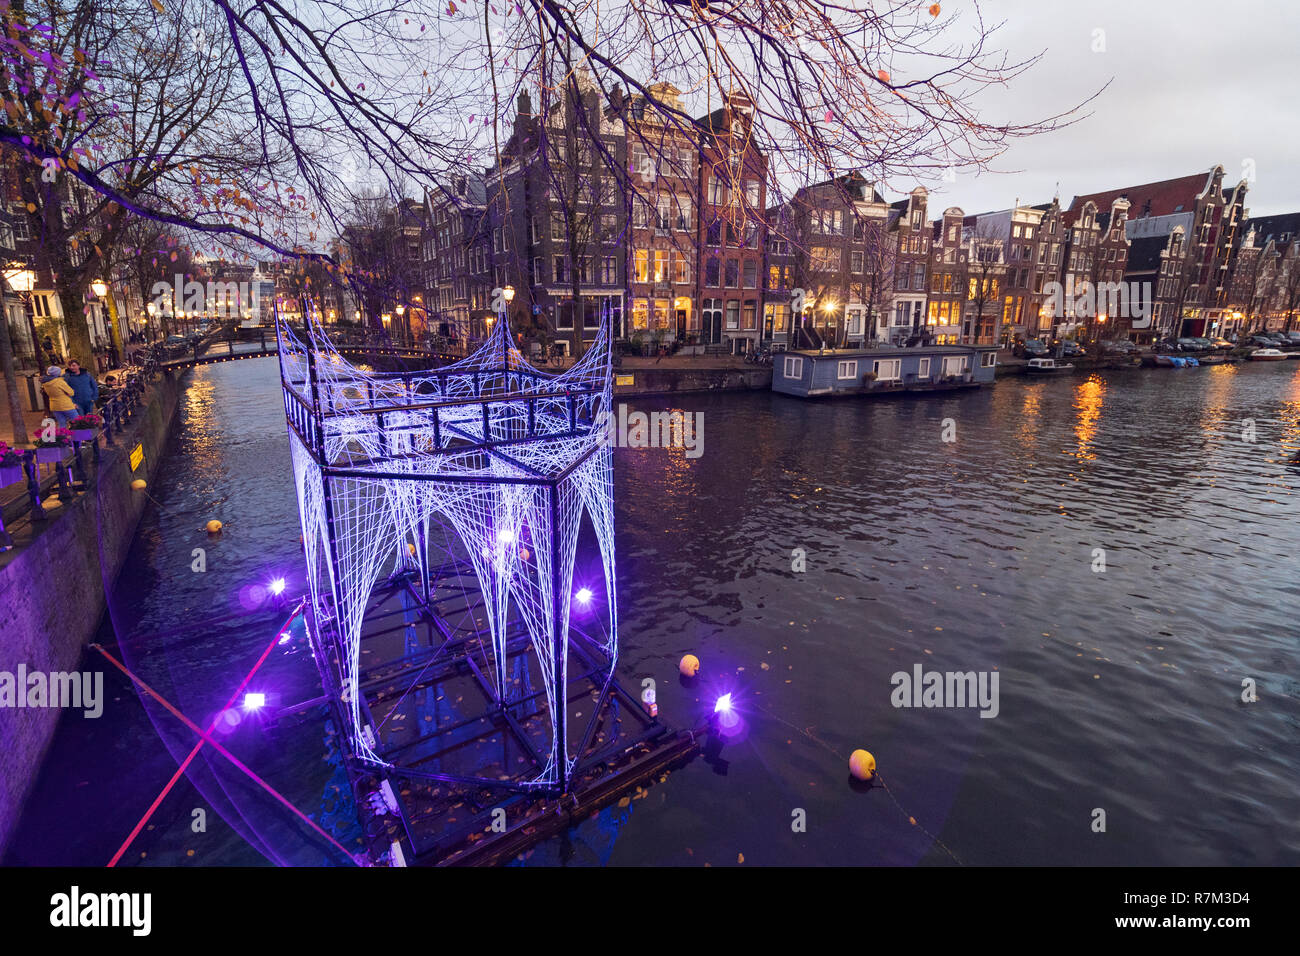 Vista de noche del canal Brouwersgracht con instalación de arte iluminada de noche en Ámsterdam, Países Bajos Foto de stock